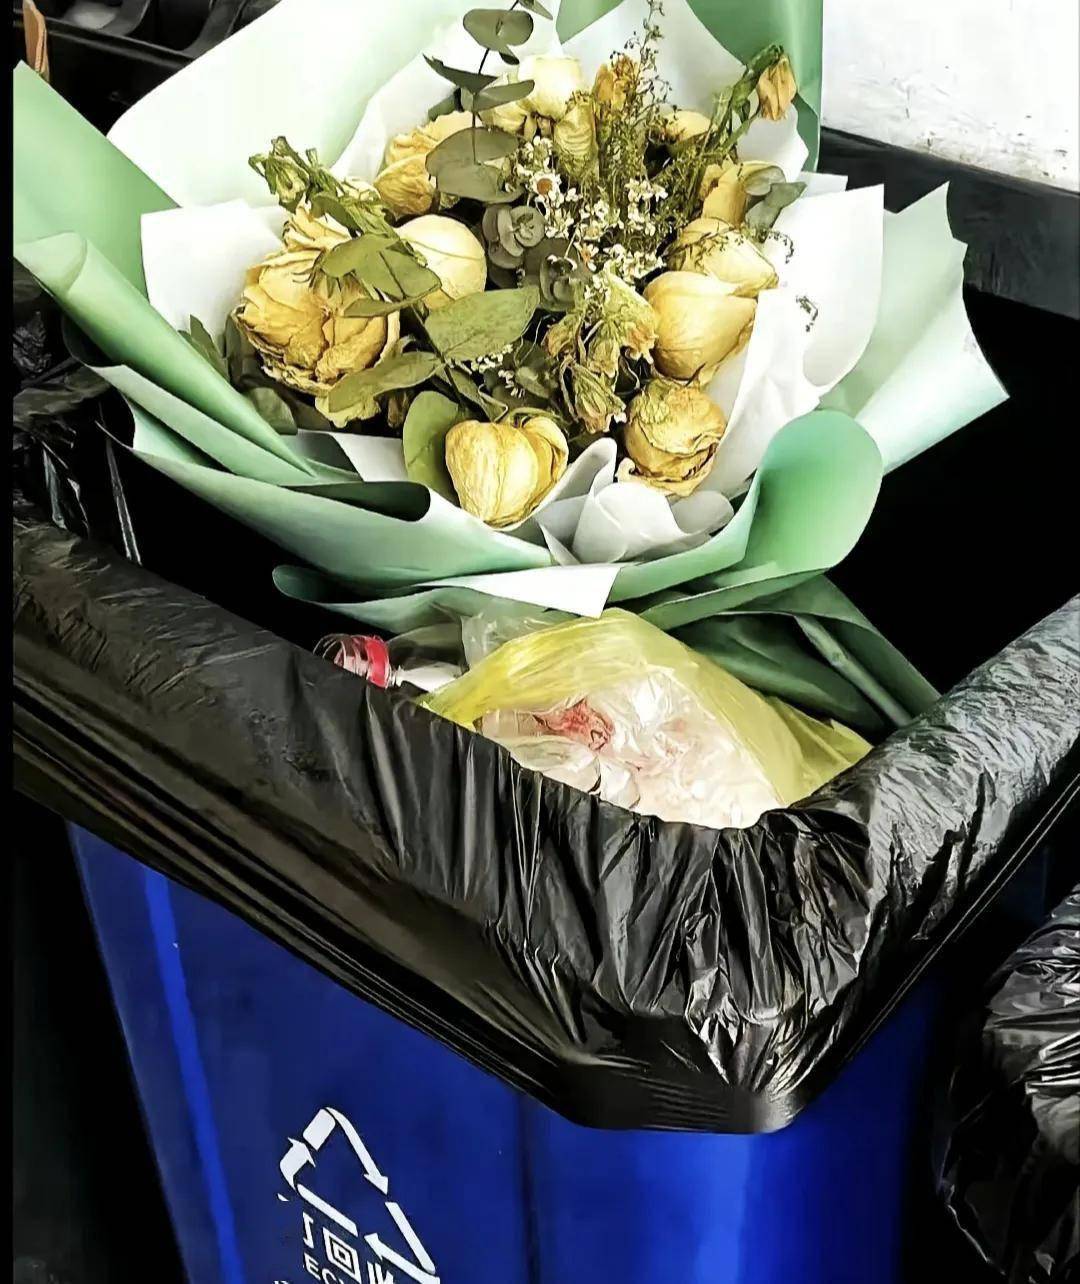 花被丢进垃圾桶的图片图片